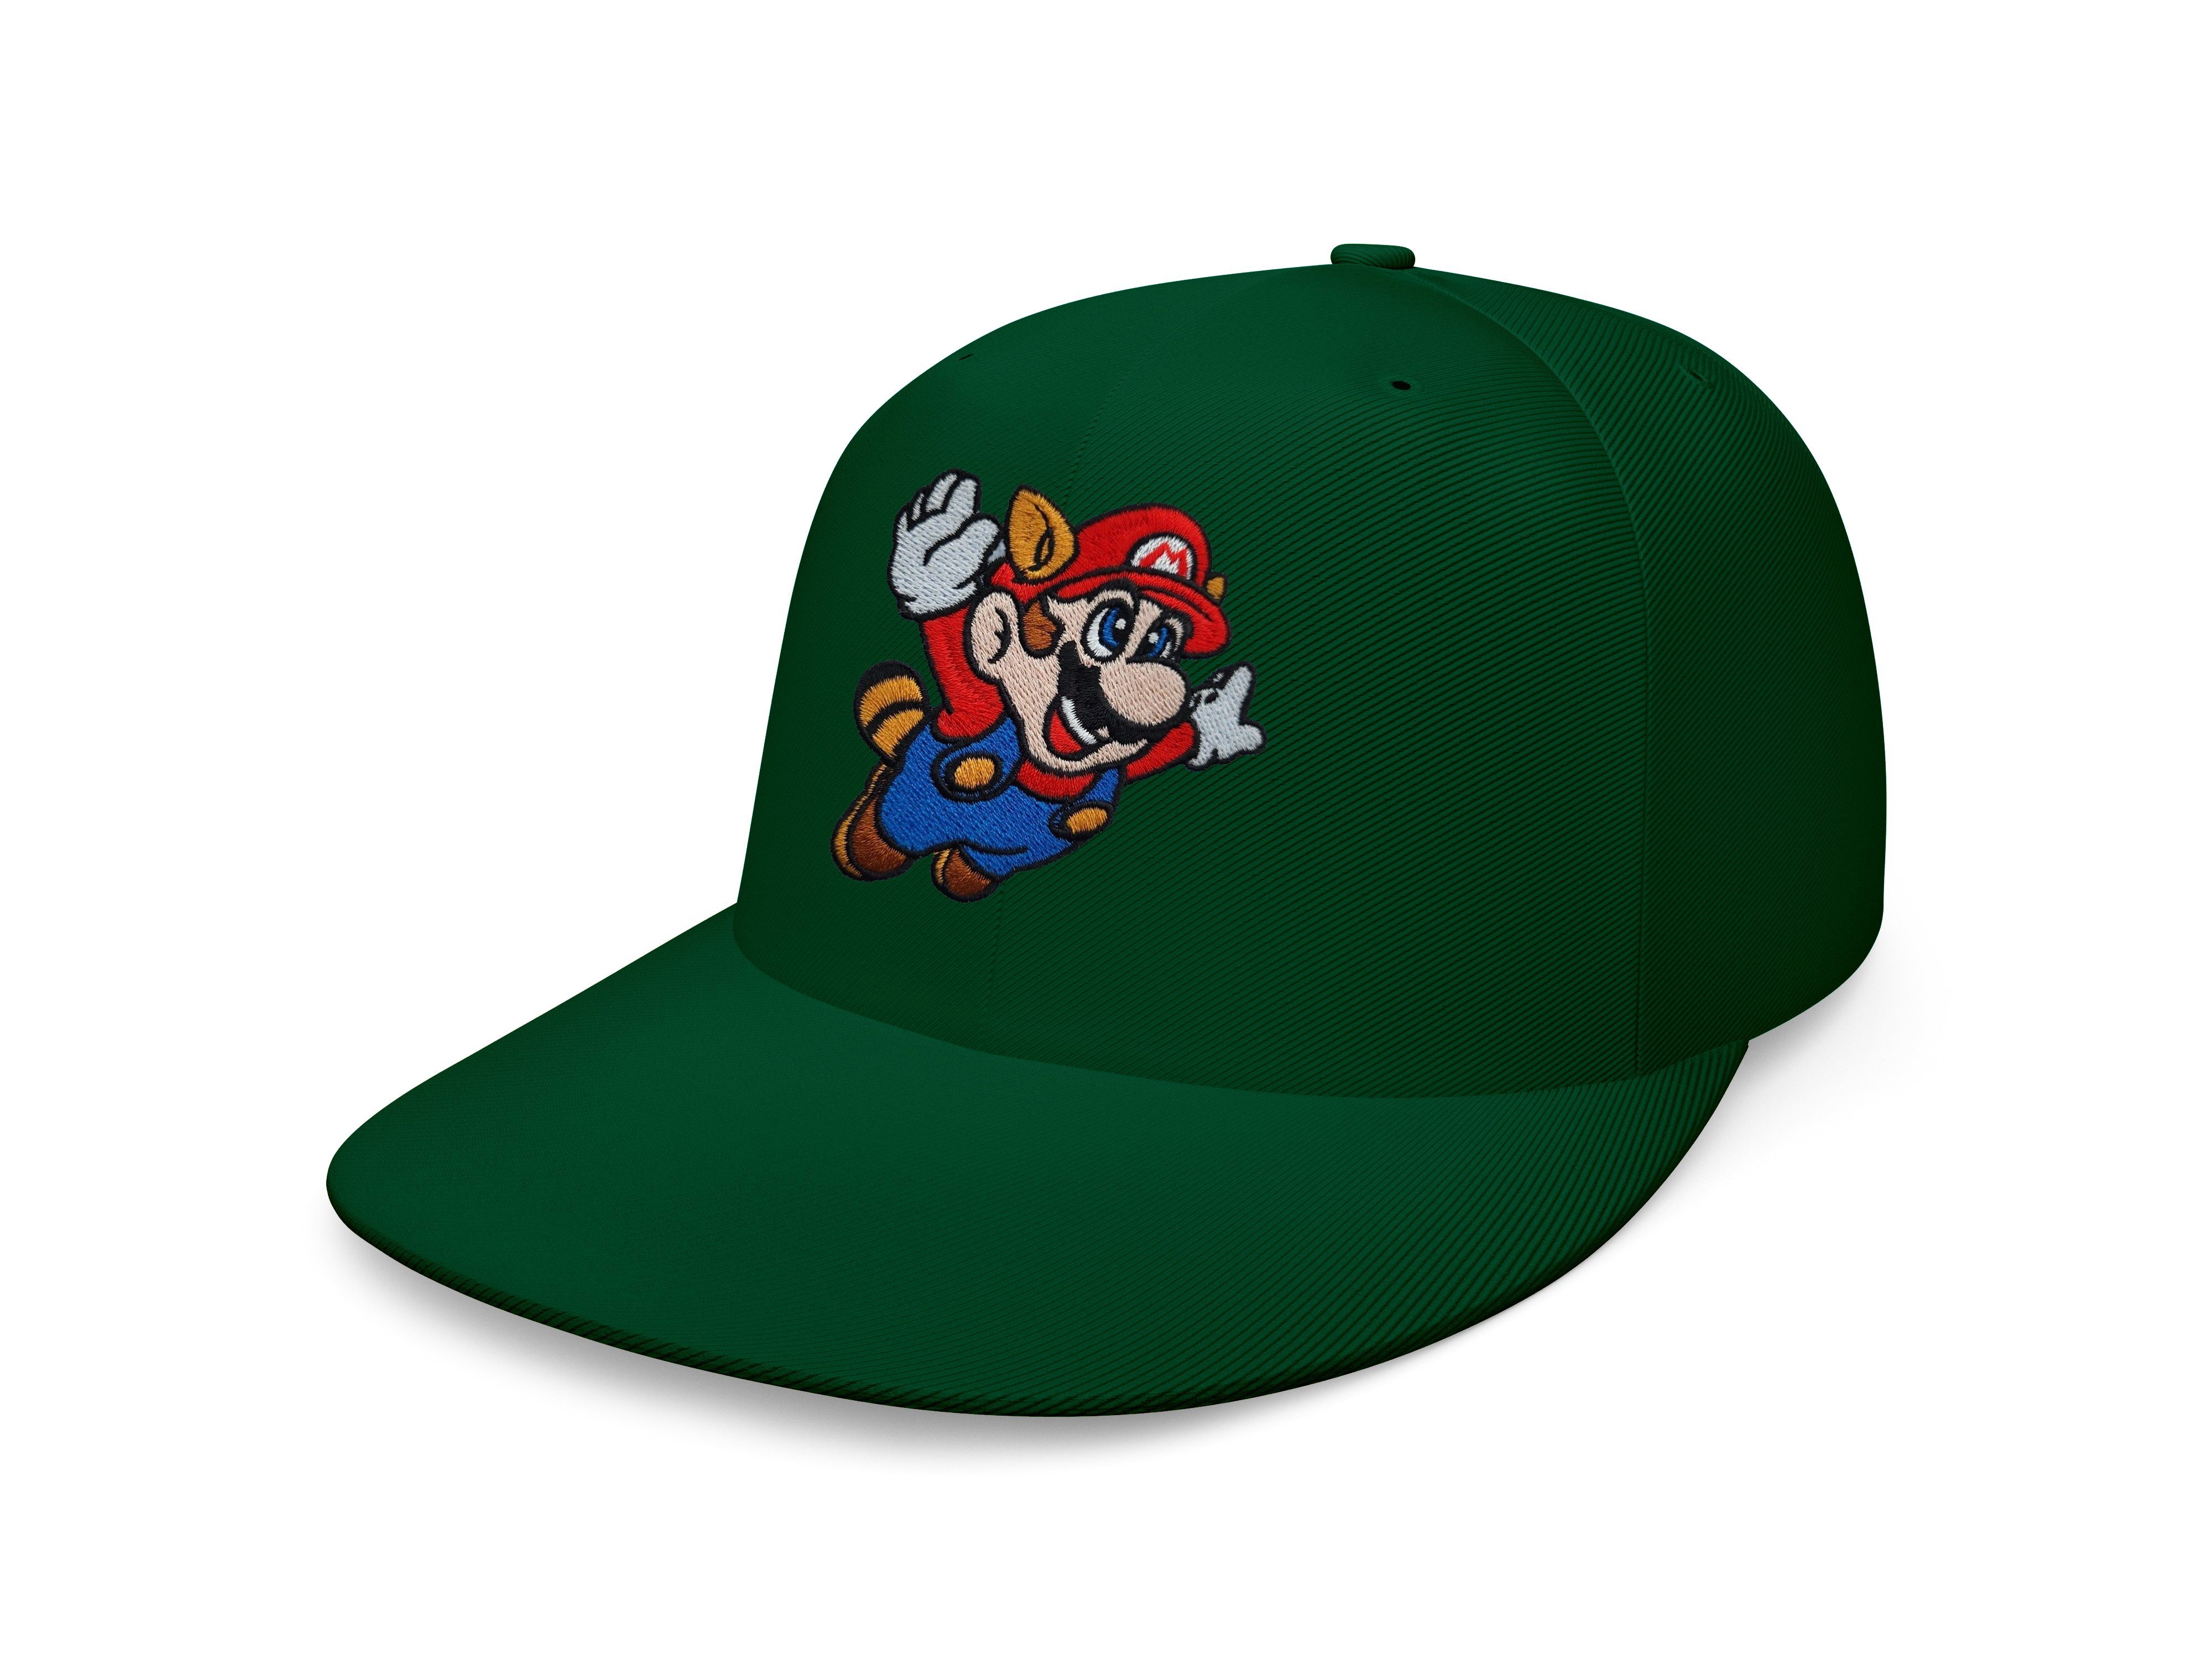 Cap Luigi Nintendo Mario Unisex Blondie Erwachsene & Flaschengrün Snapback Patch Baseball Brownie Fligh Stick